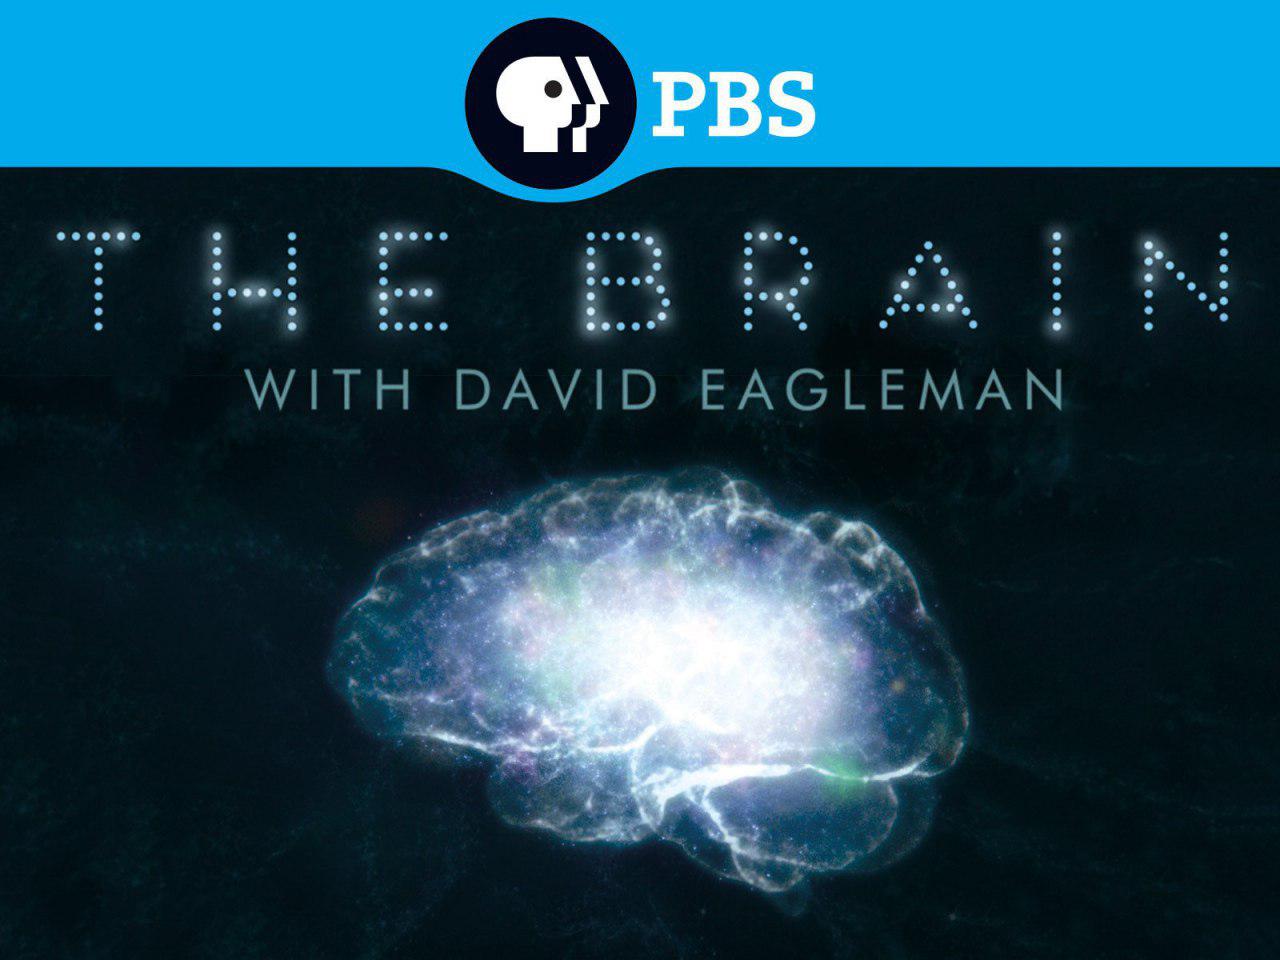 مجموعه جذاب «داستان مغز با دیوید ایگلمن» برای اولین بار در قاب شبکه چهار